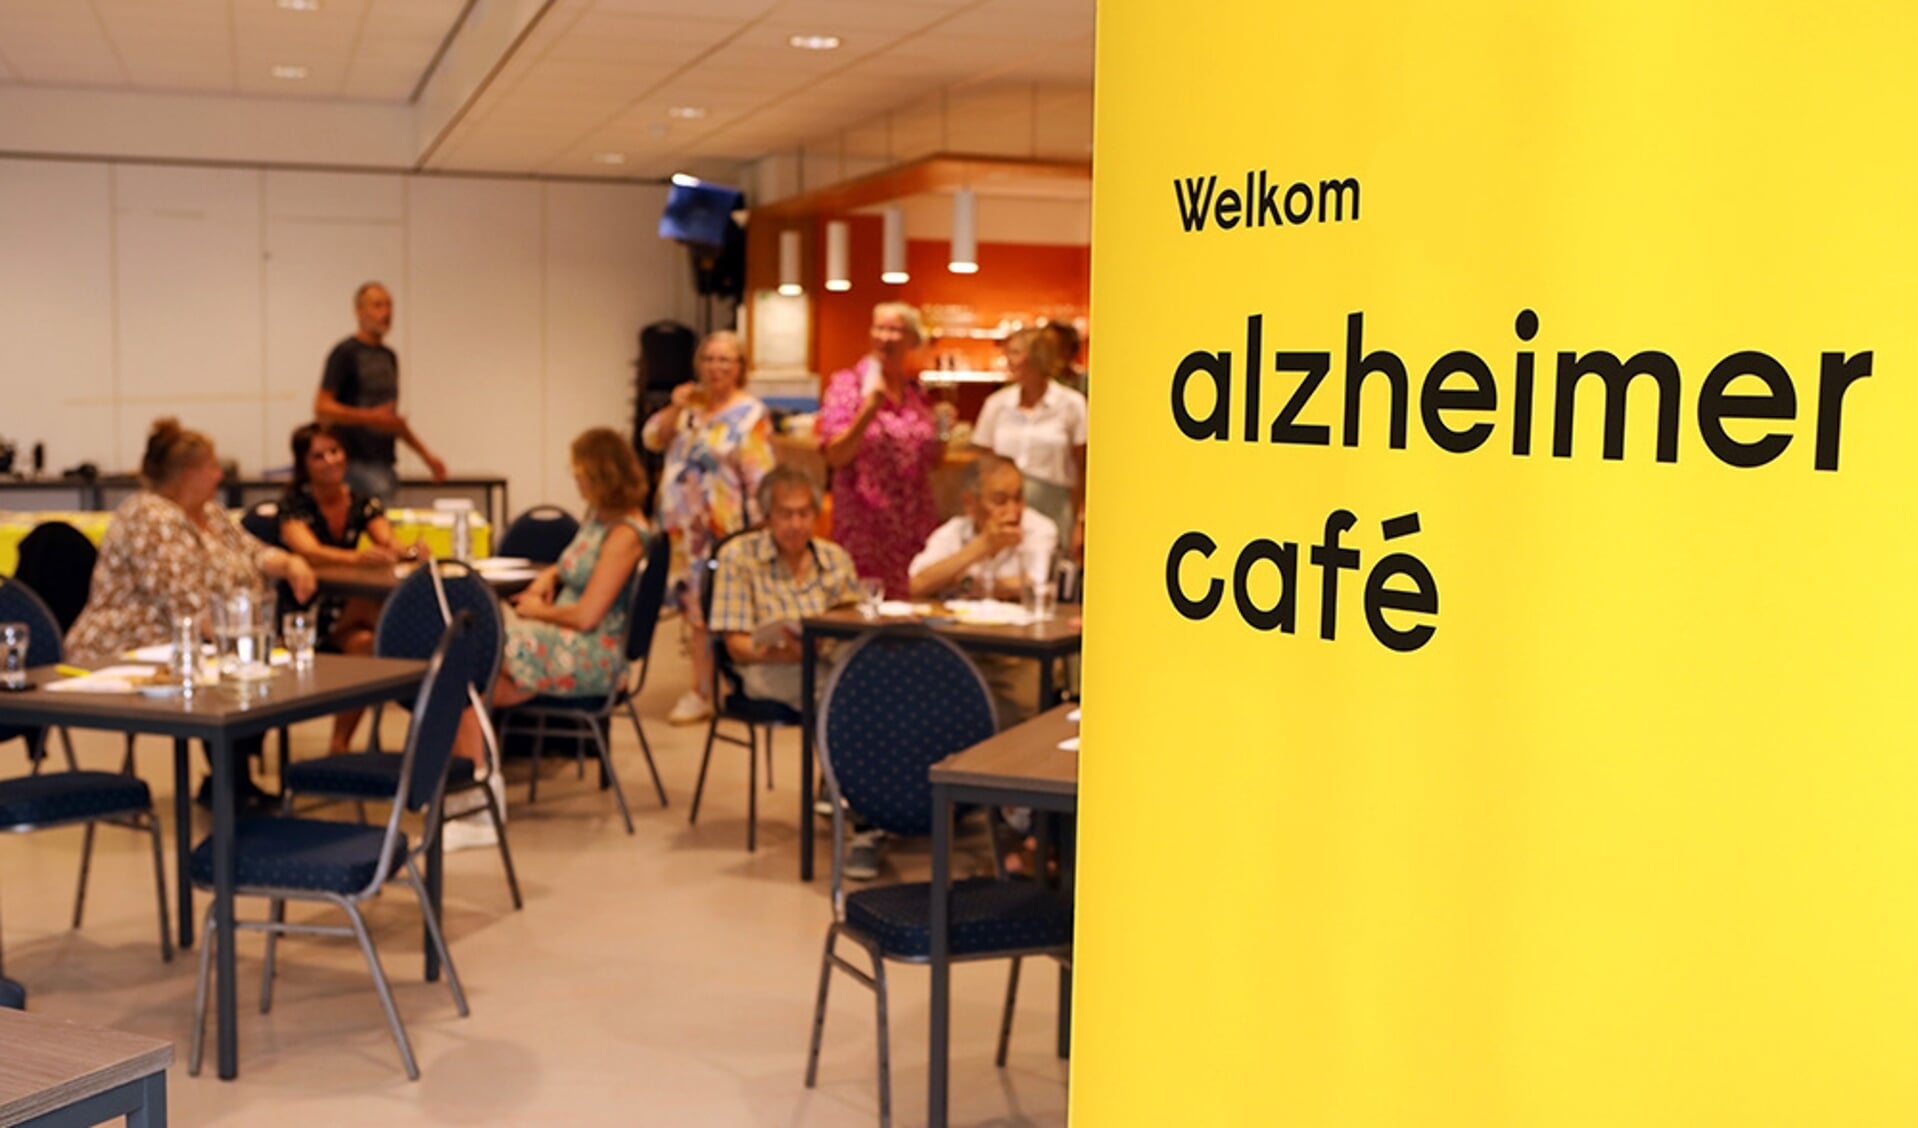 Nederland, Amstelveen, 25 augustus 2022
bezoekers van een Alzheimercafé in Amstelveen.
Alzheimer Nederland organiseert dit soort bijeenkomsten om mensen met en familie van mensen met dementie voor te lichten over deze aandoening.
Foto: Stijn Rademaker